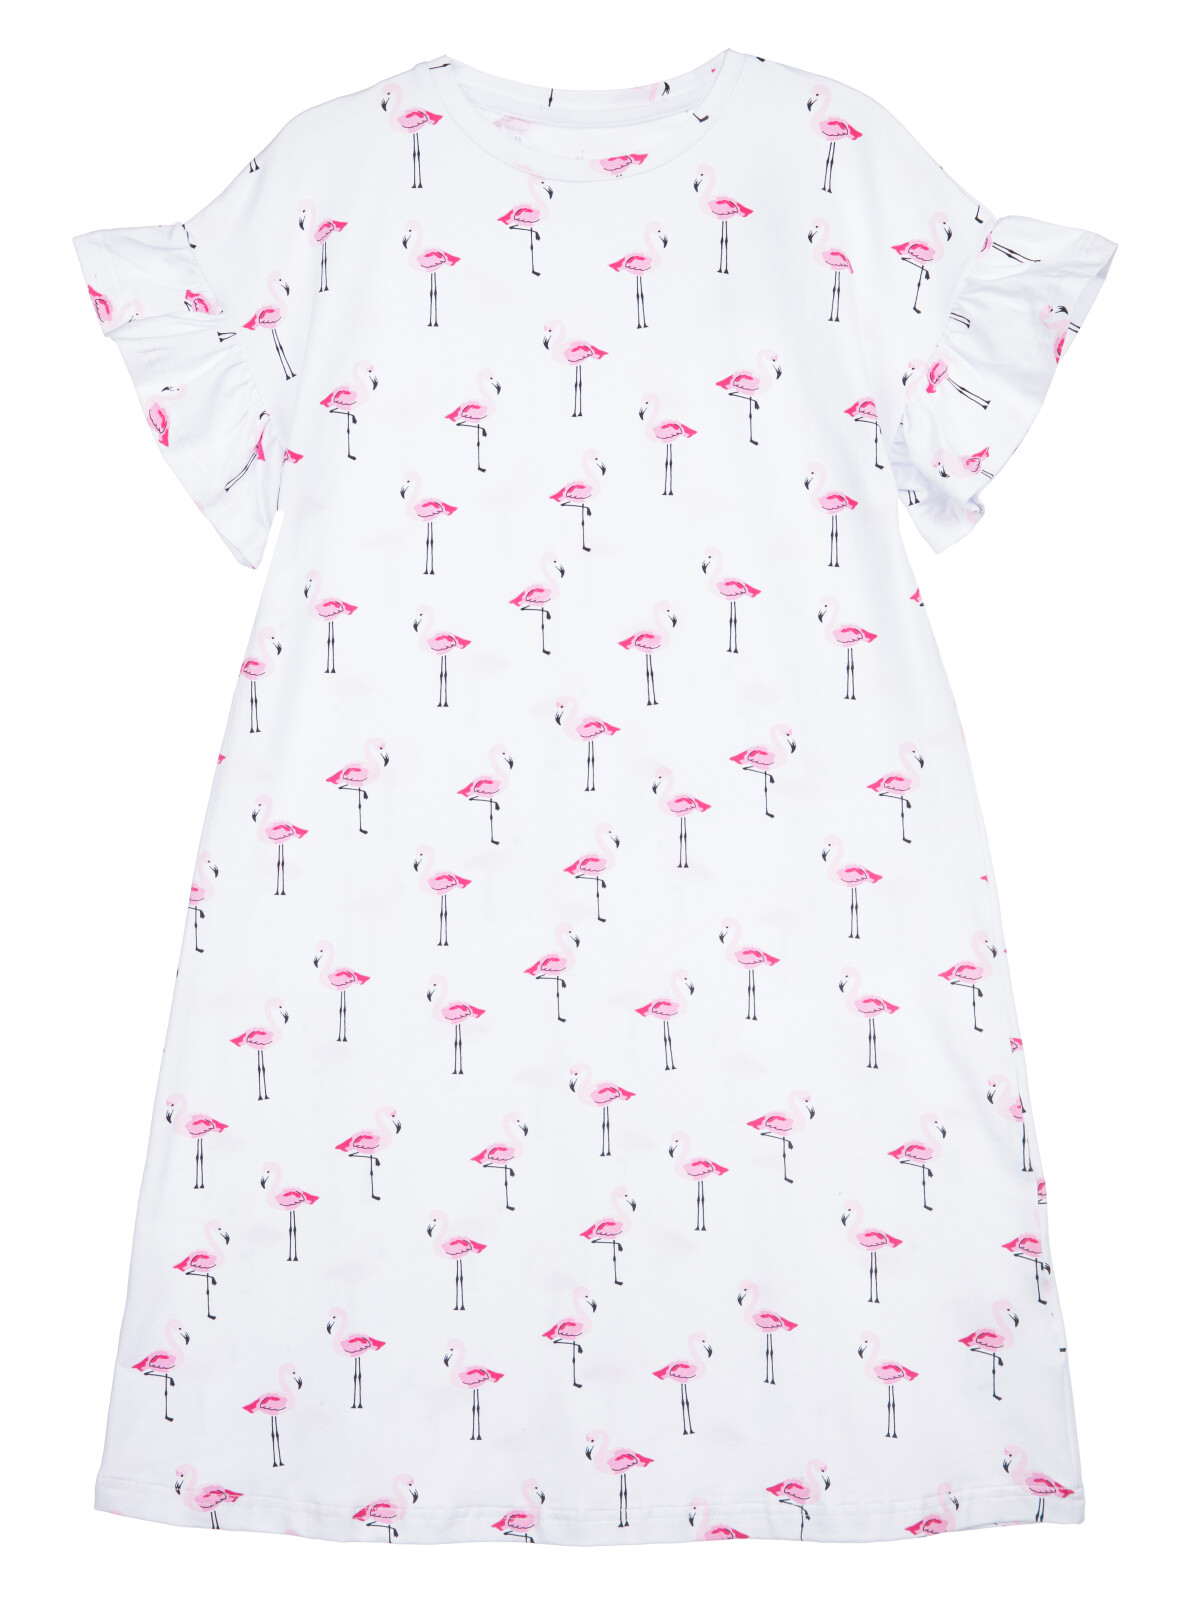 Сорочка ночная трикотажная для девочек PlayToday, белый,светло-розовый, 128